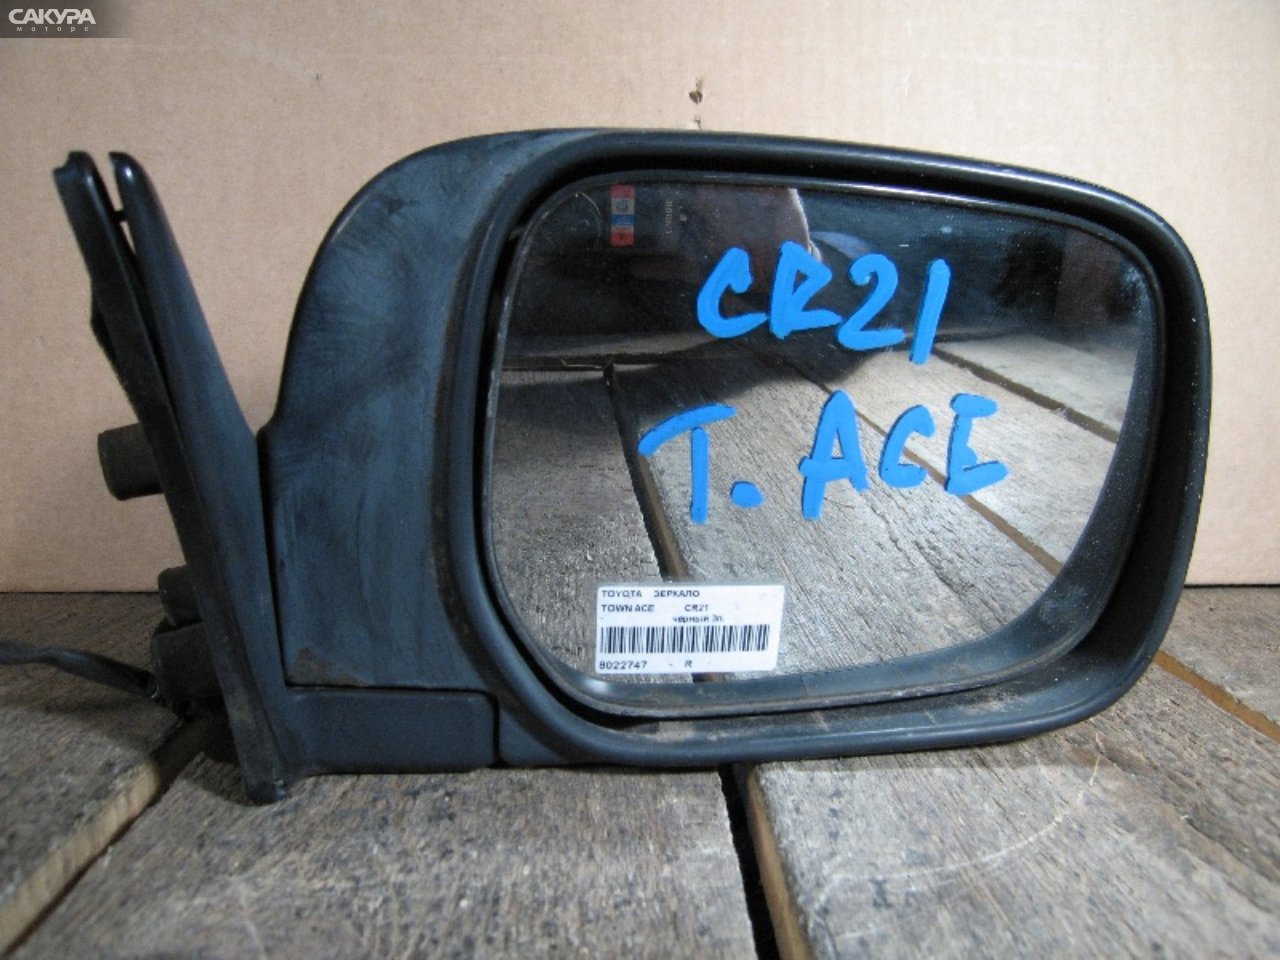 Зеркало боковое правое Toyota Townace CR21G: купить в Сакура Абакан.